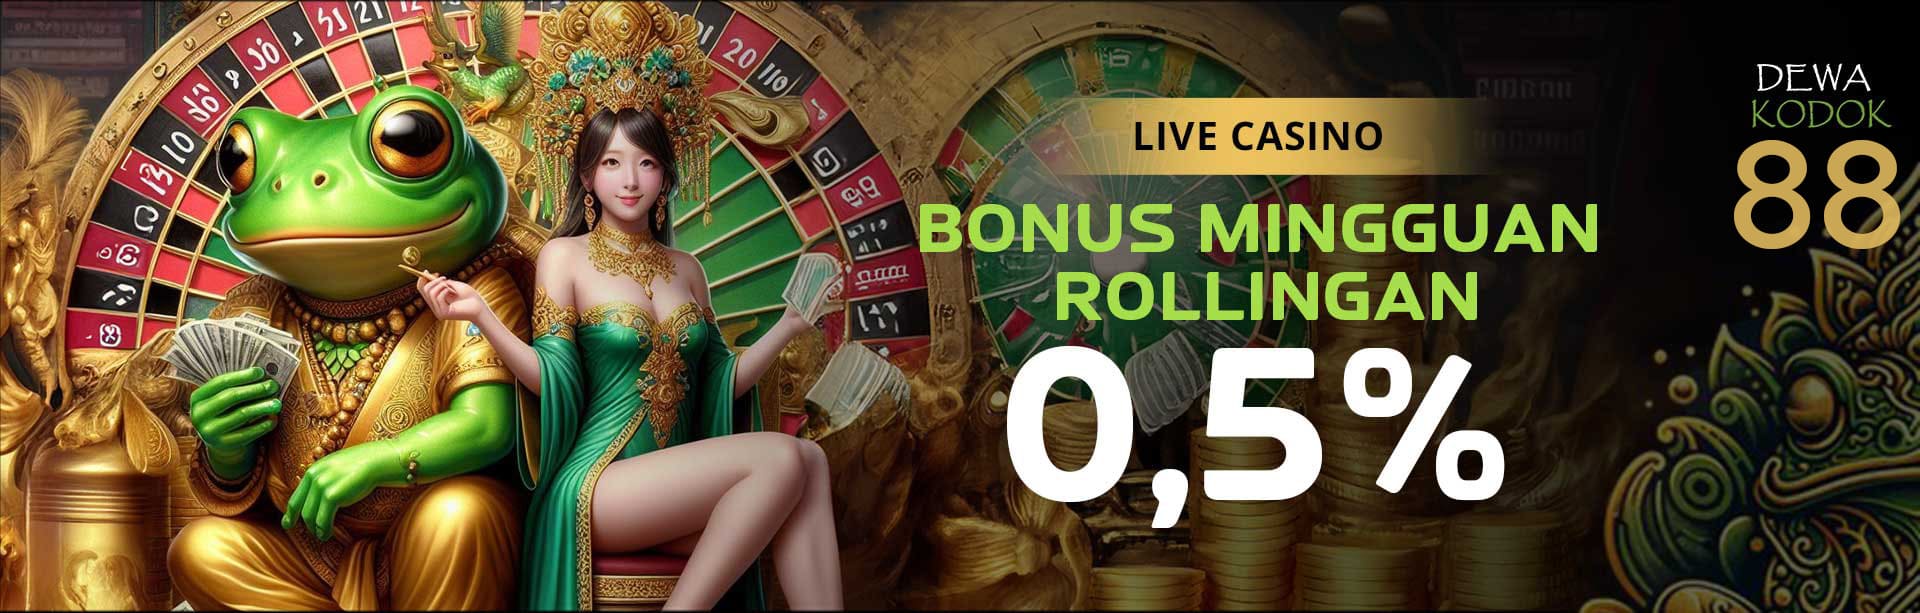 DEWAKODOK Promosi Live Casino Rolling 0,5%